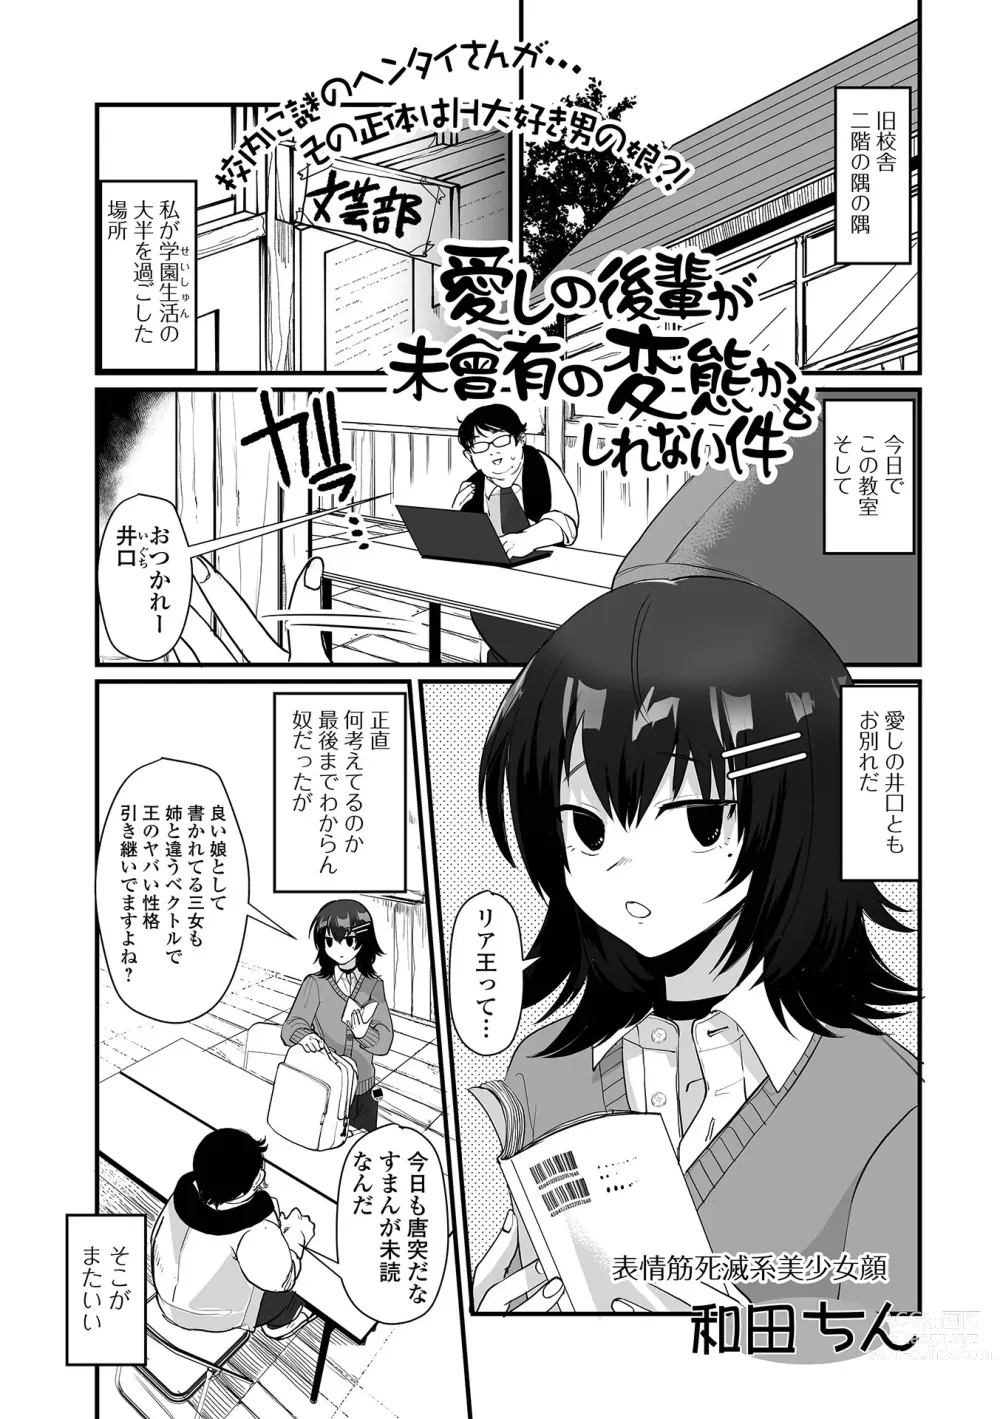 Page 3 of manga Gekkan Web Otoko no Ko-llection! S Vol. 95